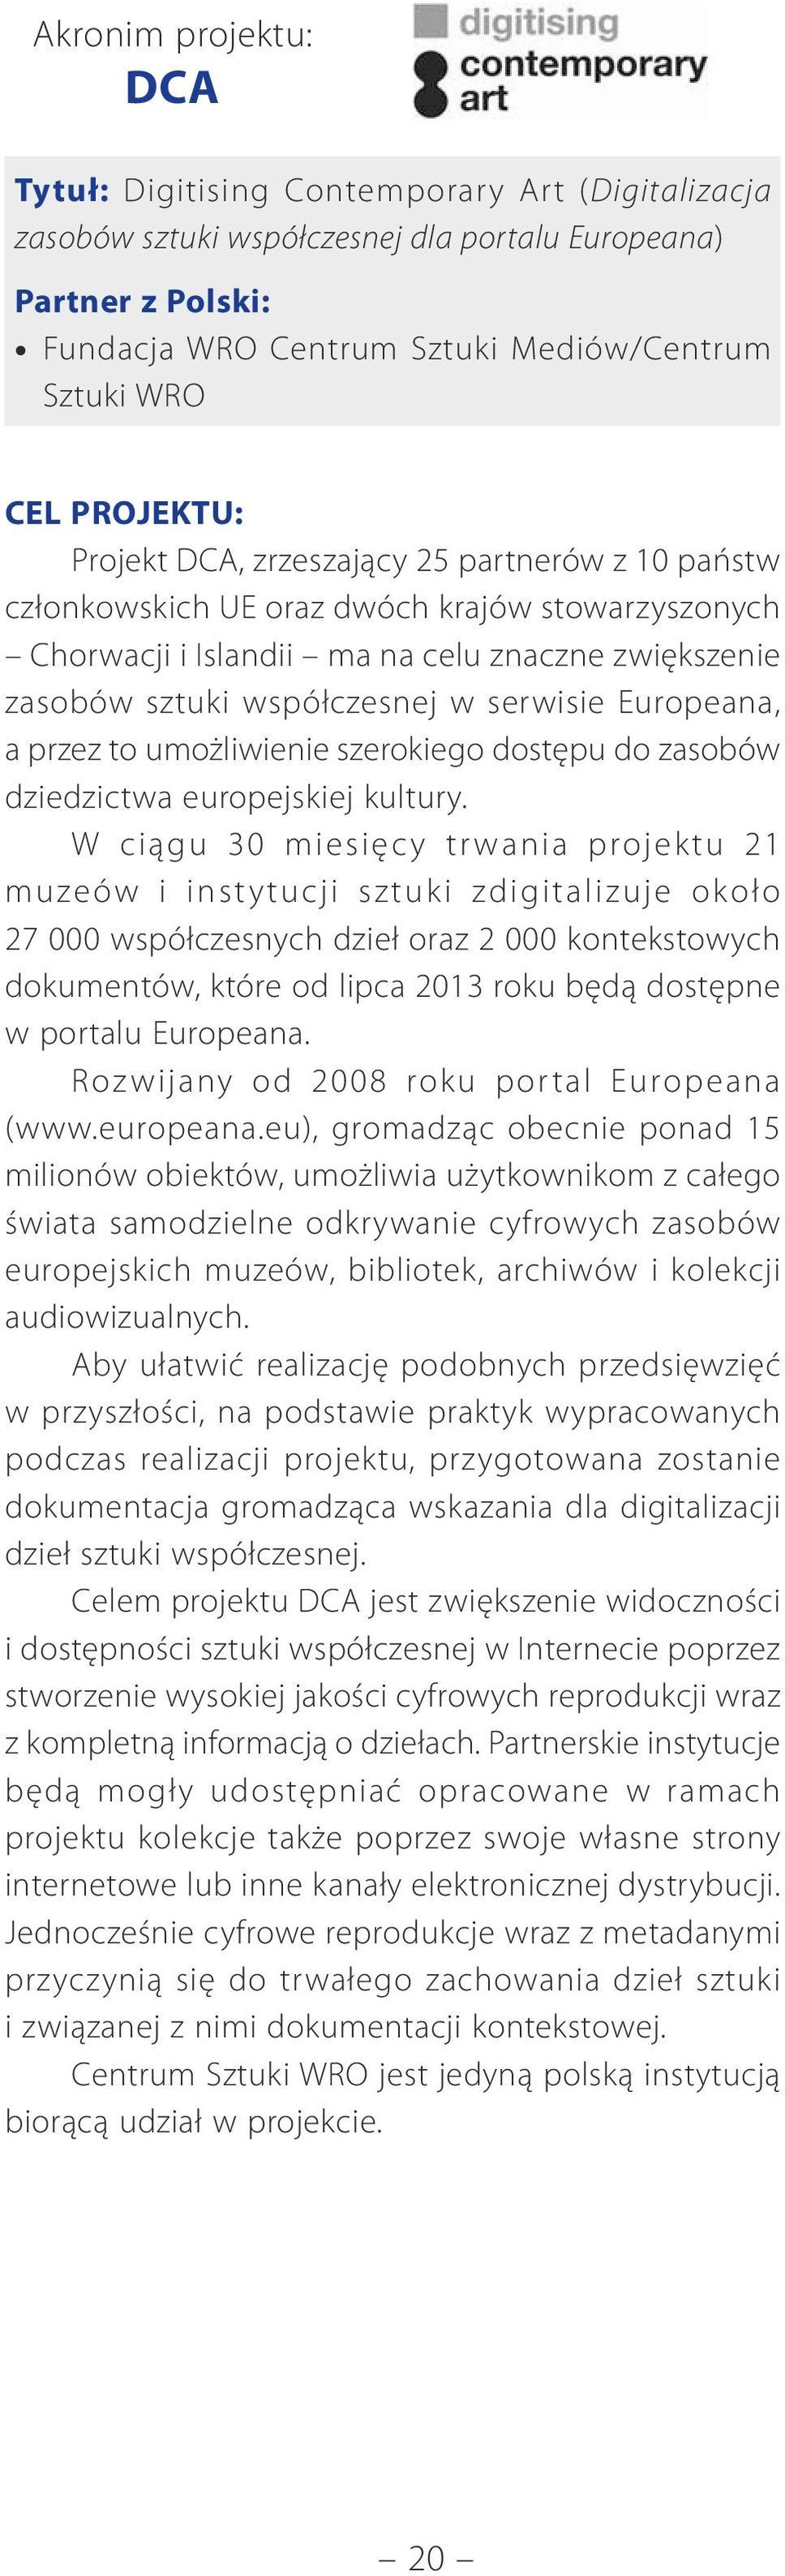 serwisie Europeana, a przez to umożliwienie szerokiego dostępu do zasobów dziedzictwa europejskiej kultury.